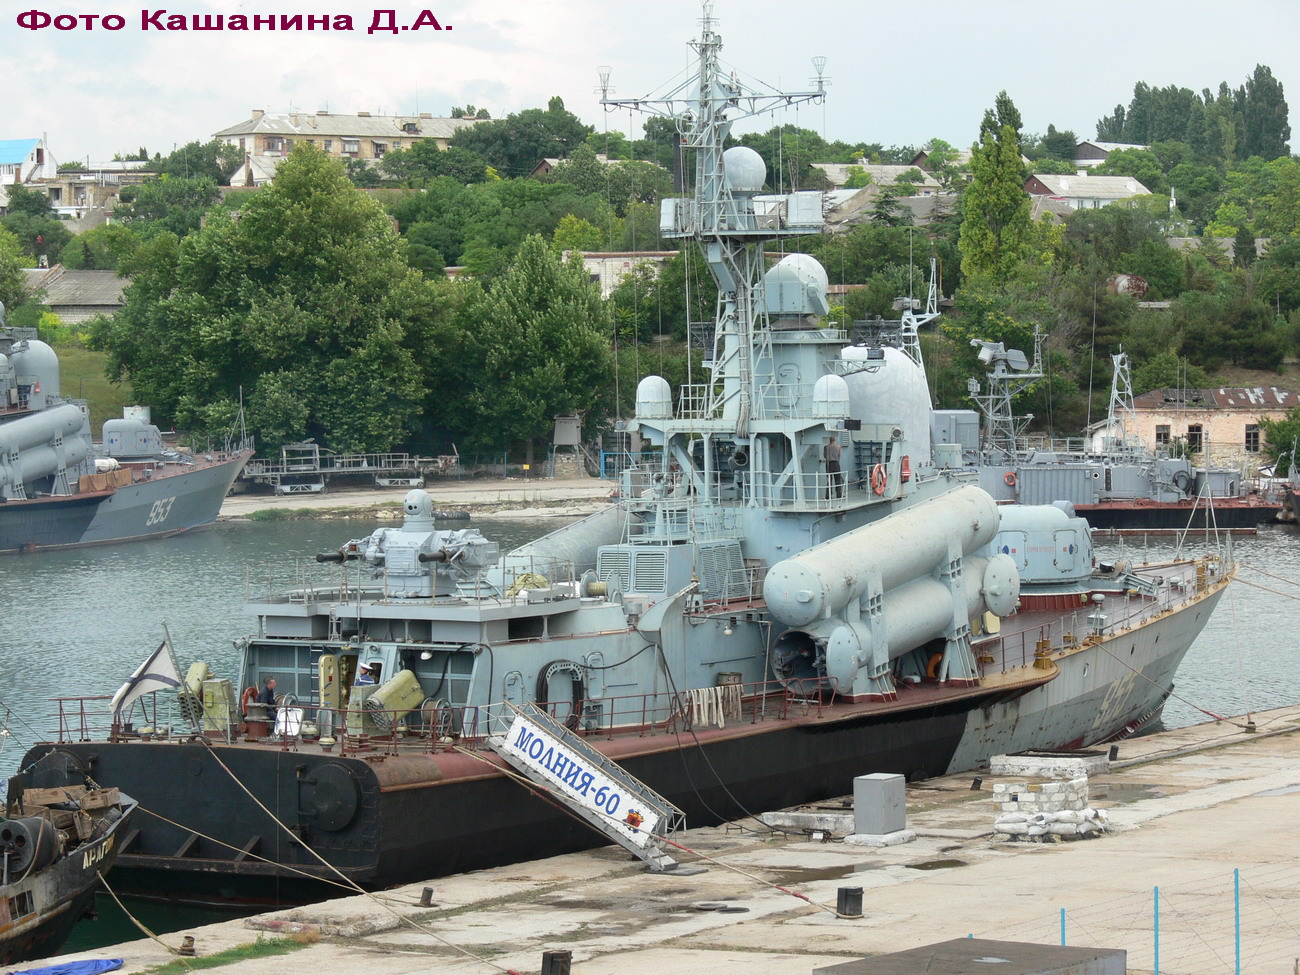 РКА Р-60 Молния (Карантинная бухта, Севастополь, июль 2006 г.).jpg